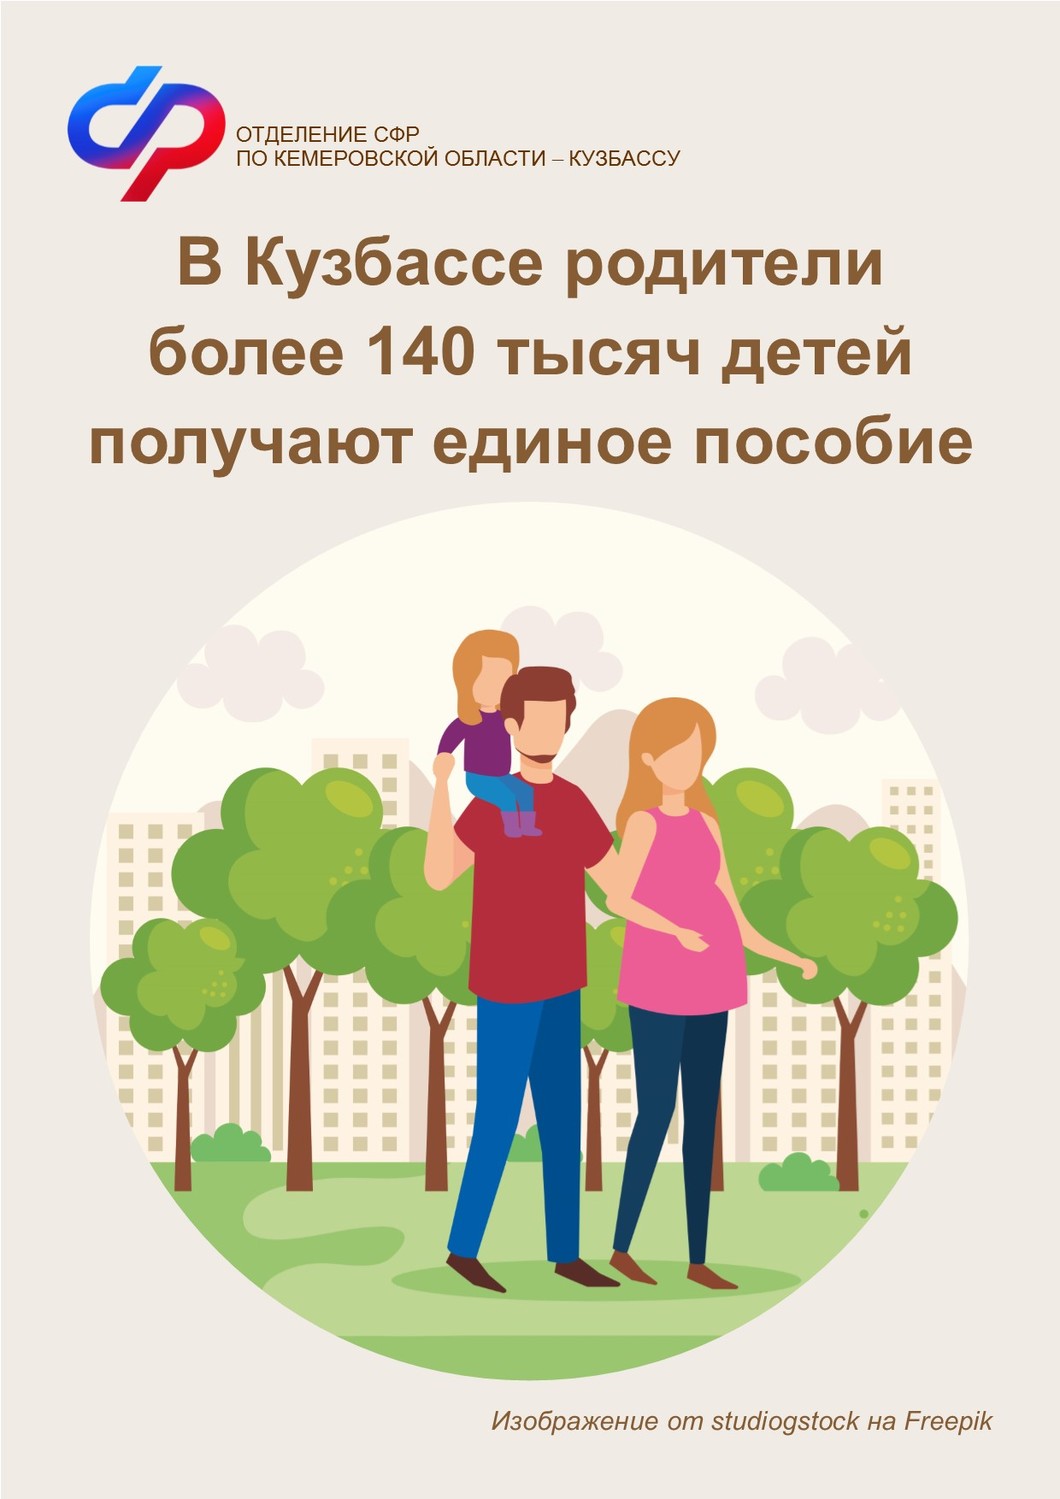 В Кузбассе единое пособие получают родители более 140 тысяч детей